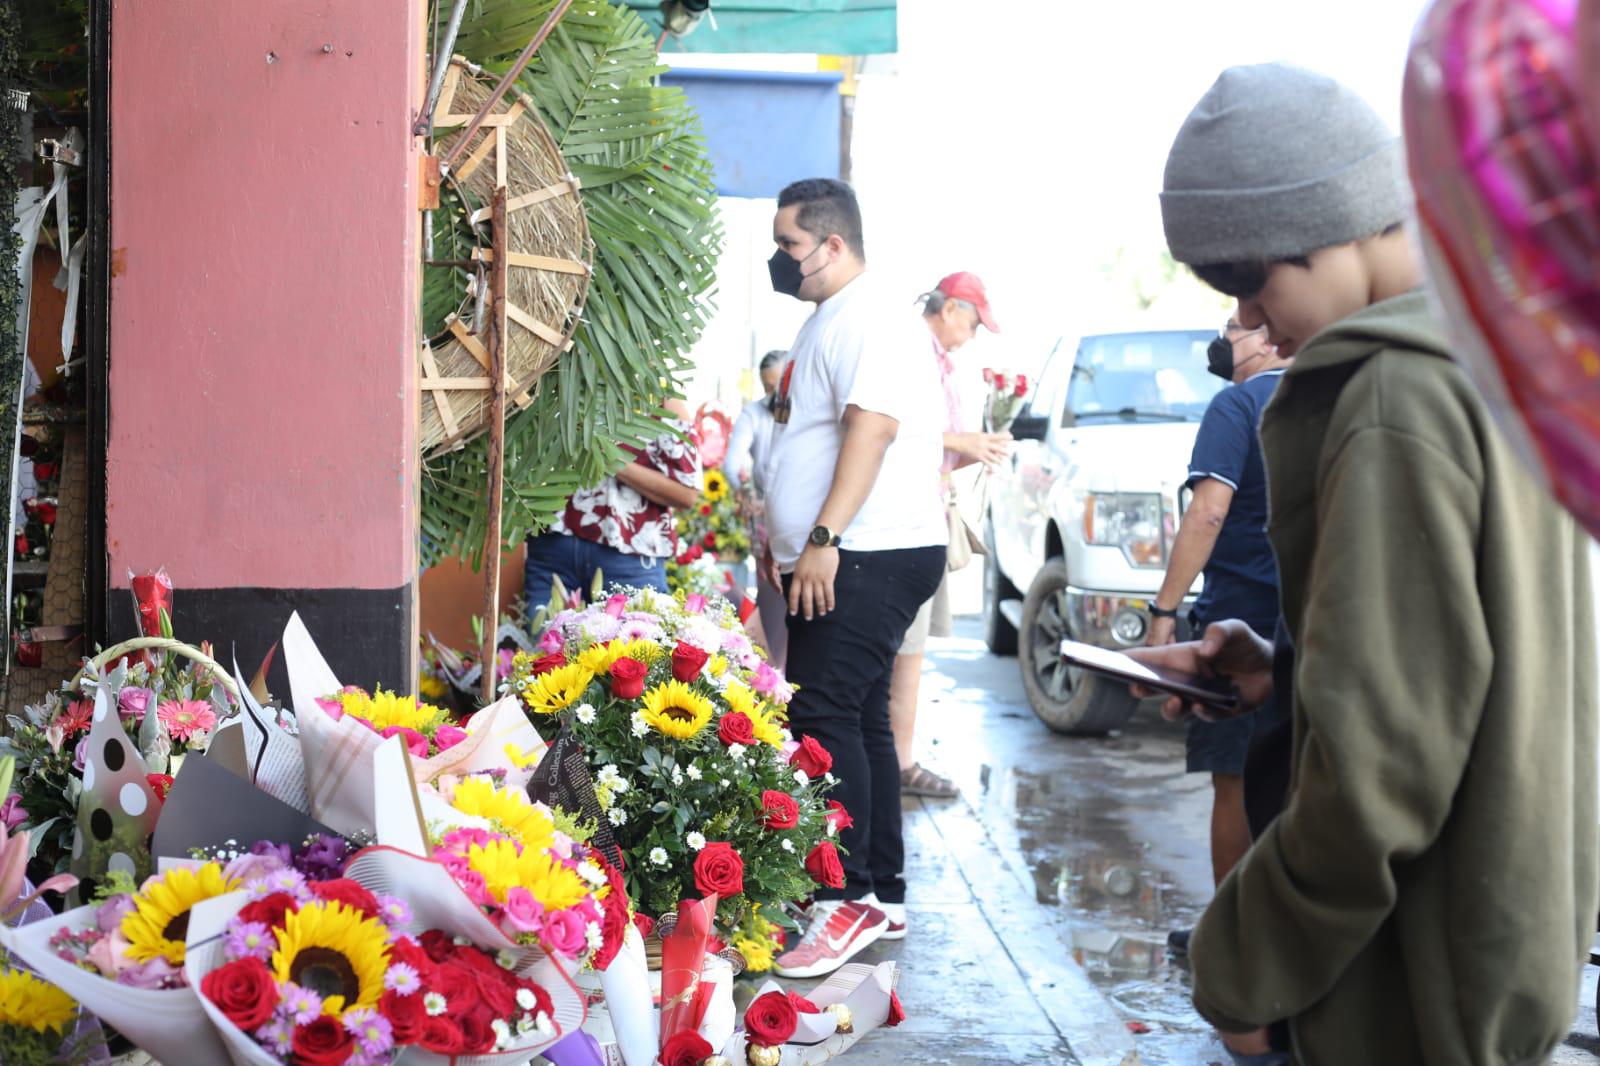 $!Comerciantes de globos, decoraciones y flores en Mazatlán reportan bajas ventas este 14 de febrero